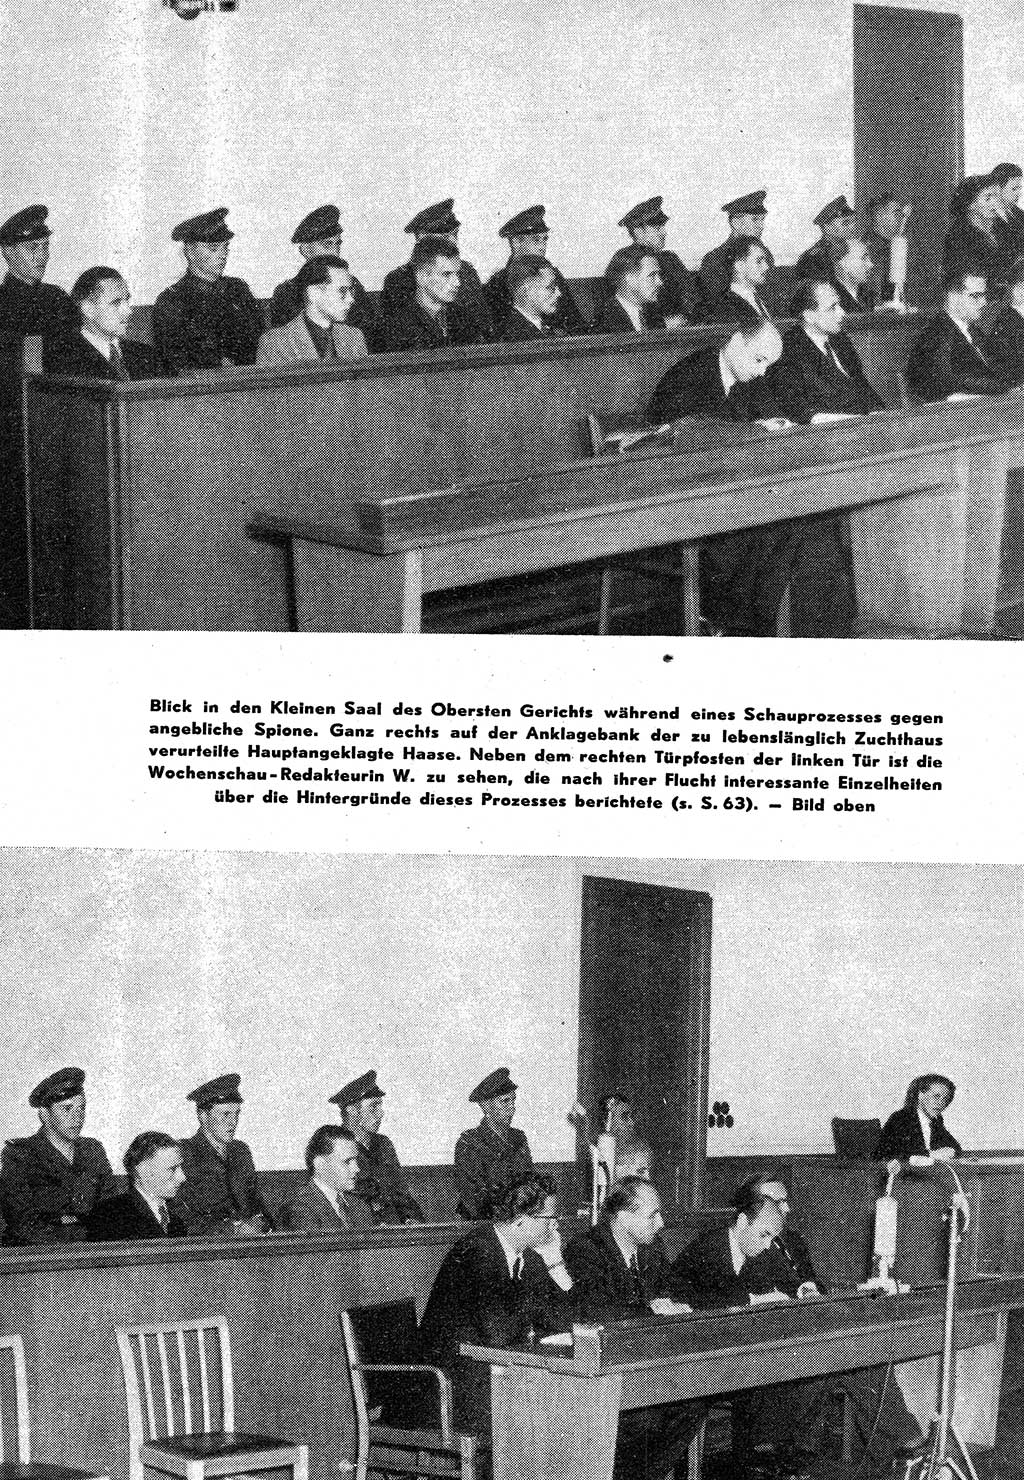 Staatssicherheitsdienst (SSD) [Deutsche Demokratische Republik (DDR)], Untersuchungsausschuß Freiheitlicher Juristen (UfJ) [Bundesrepublik Deutschland (BRD)] 1956, Seite 70 (SSD DDR UfJ BRD 1956, S. 70)